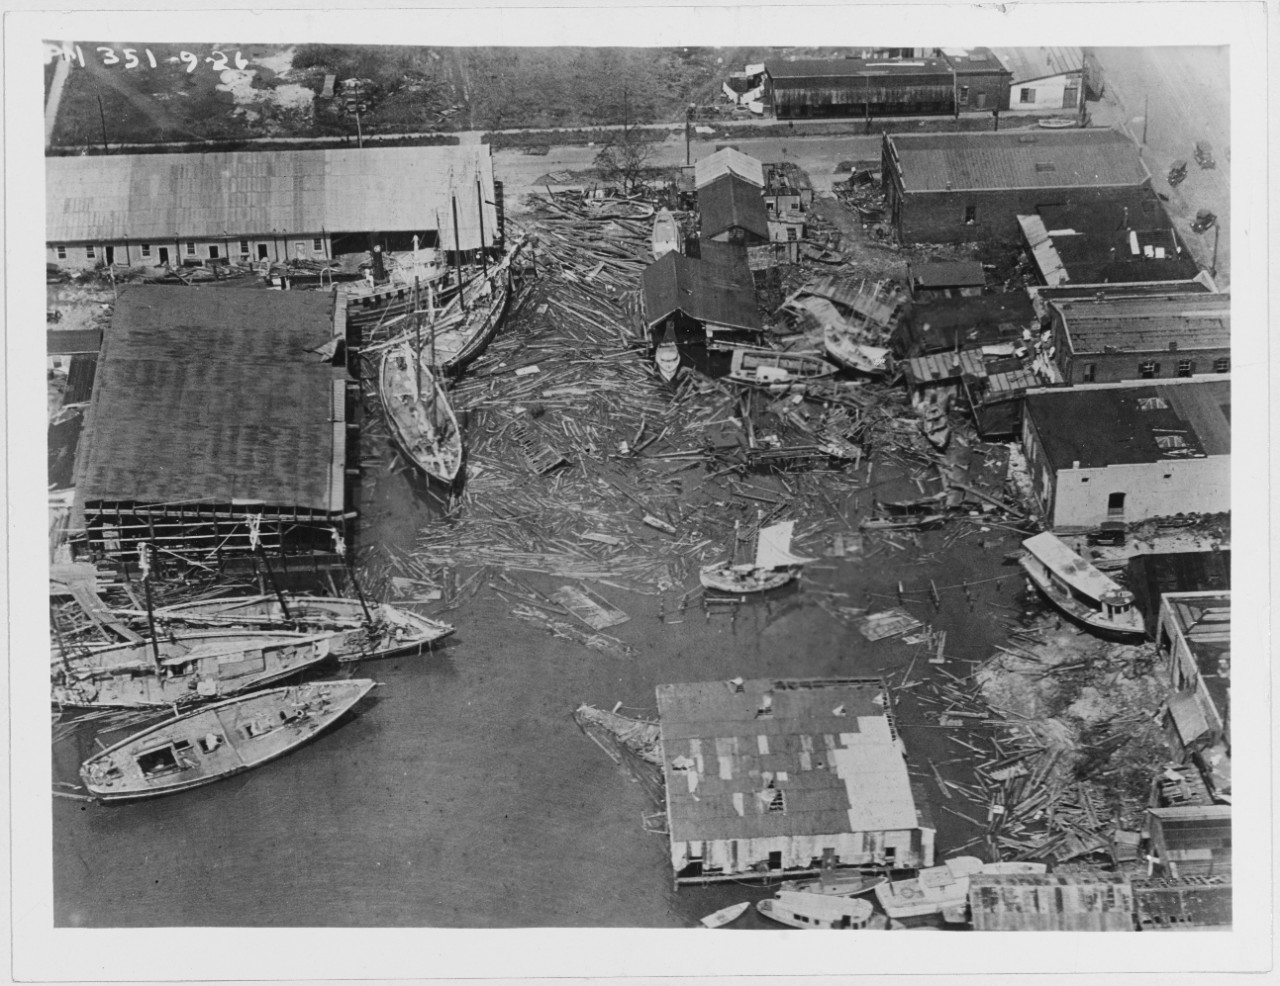 Damage after storm, September 20, 1926